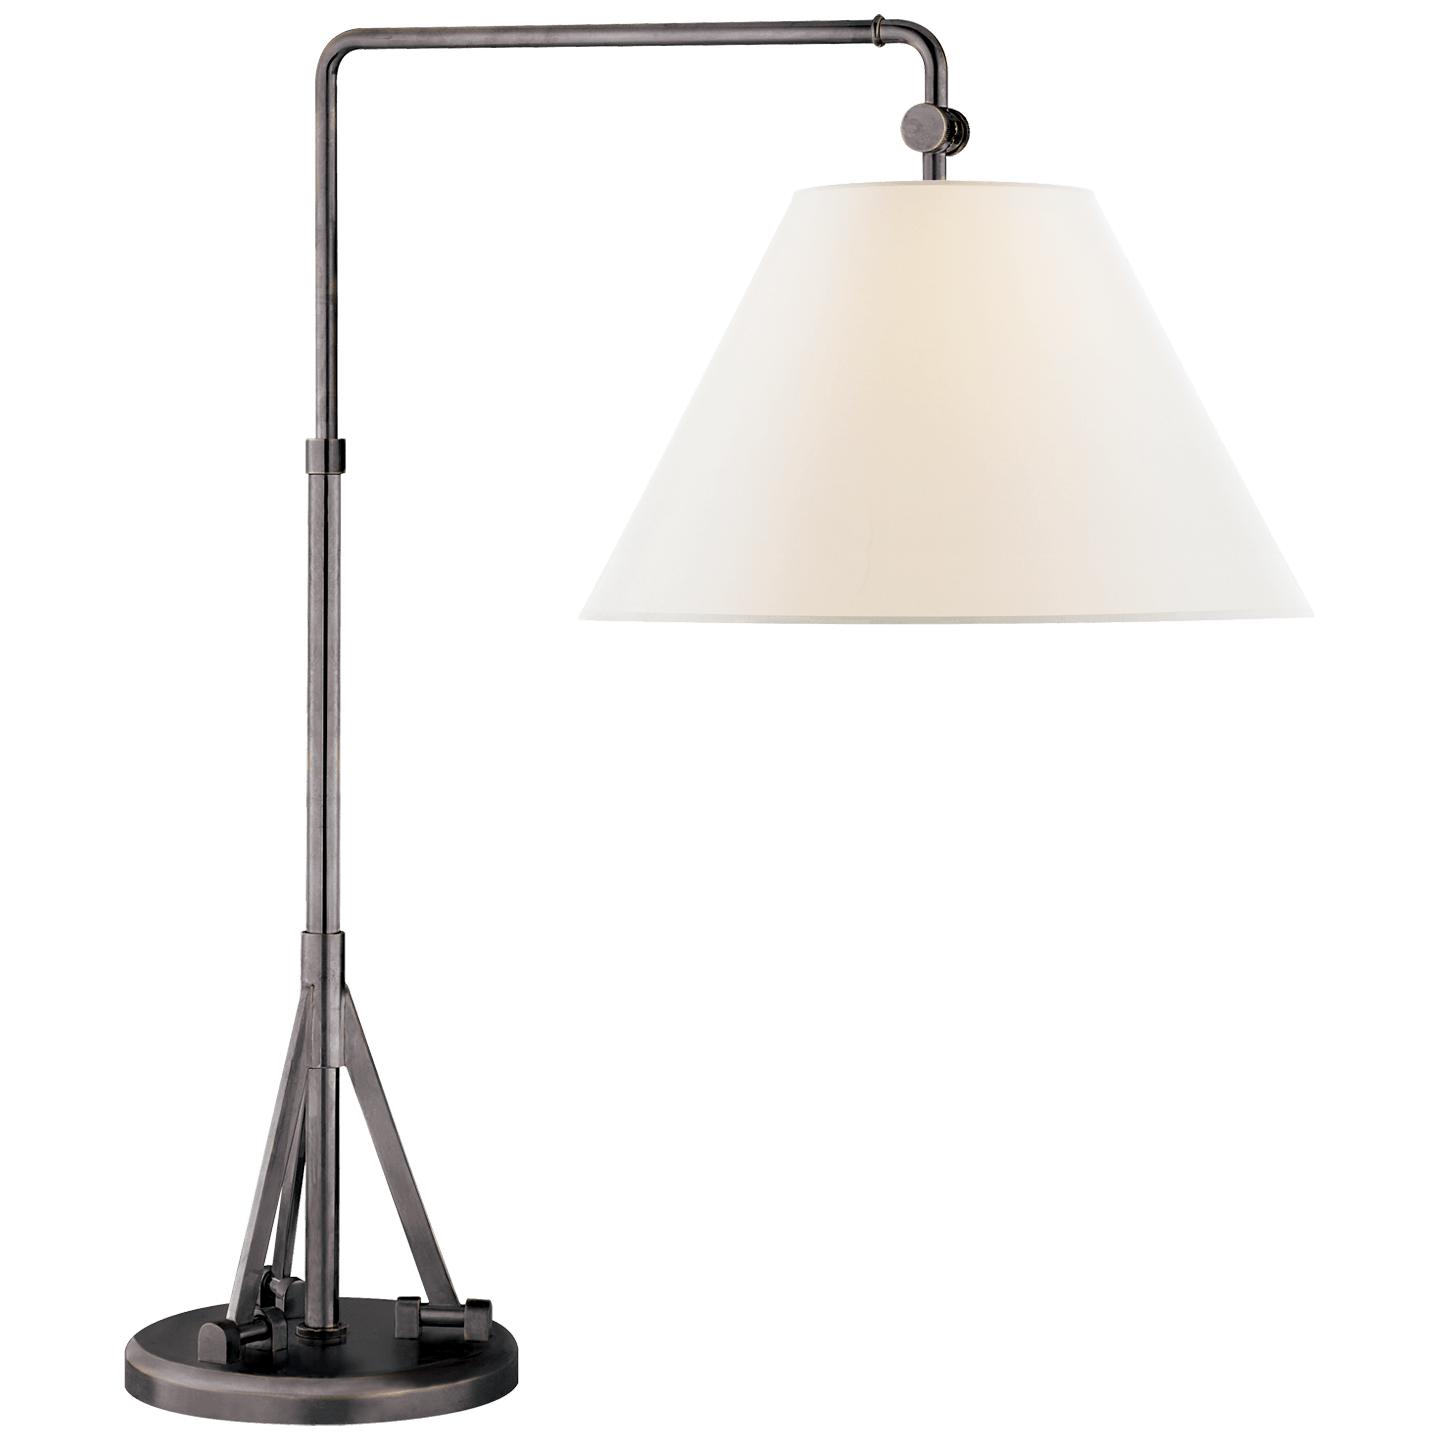 Купить Настольная лампа Brompton Swing Arm Table Lamp в интернет-магазине roooms.ru